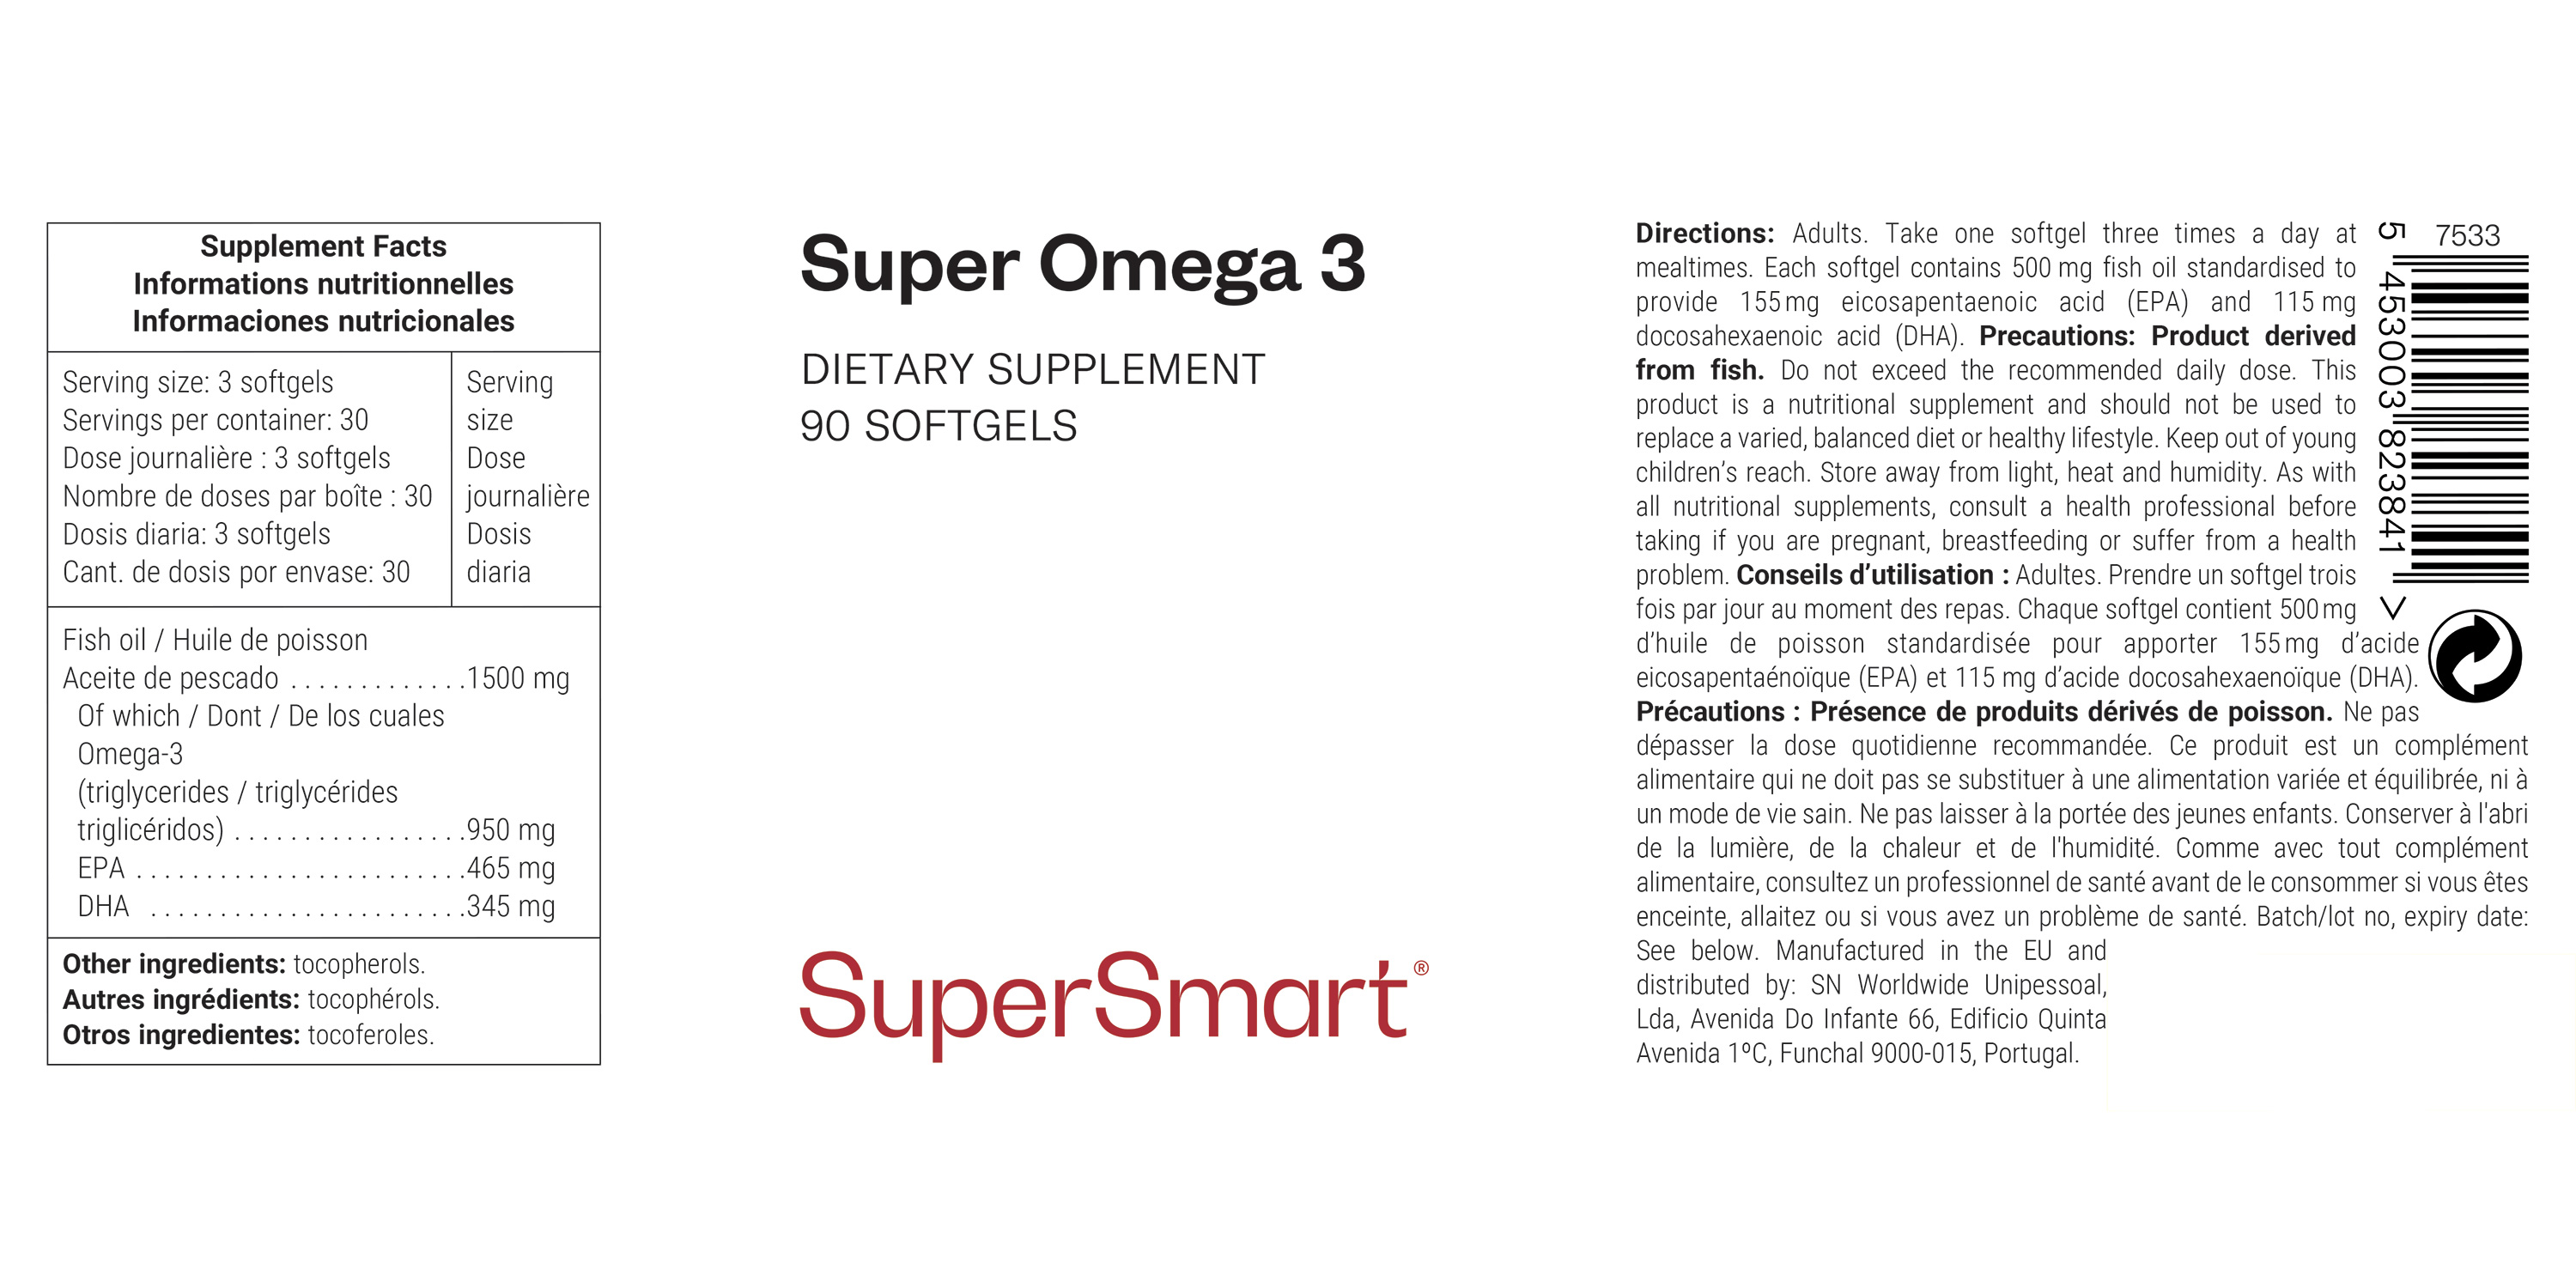 Complemento de omega 3 con EPA y DHA